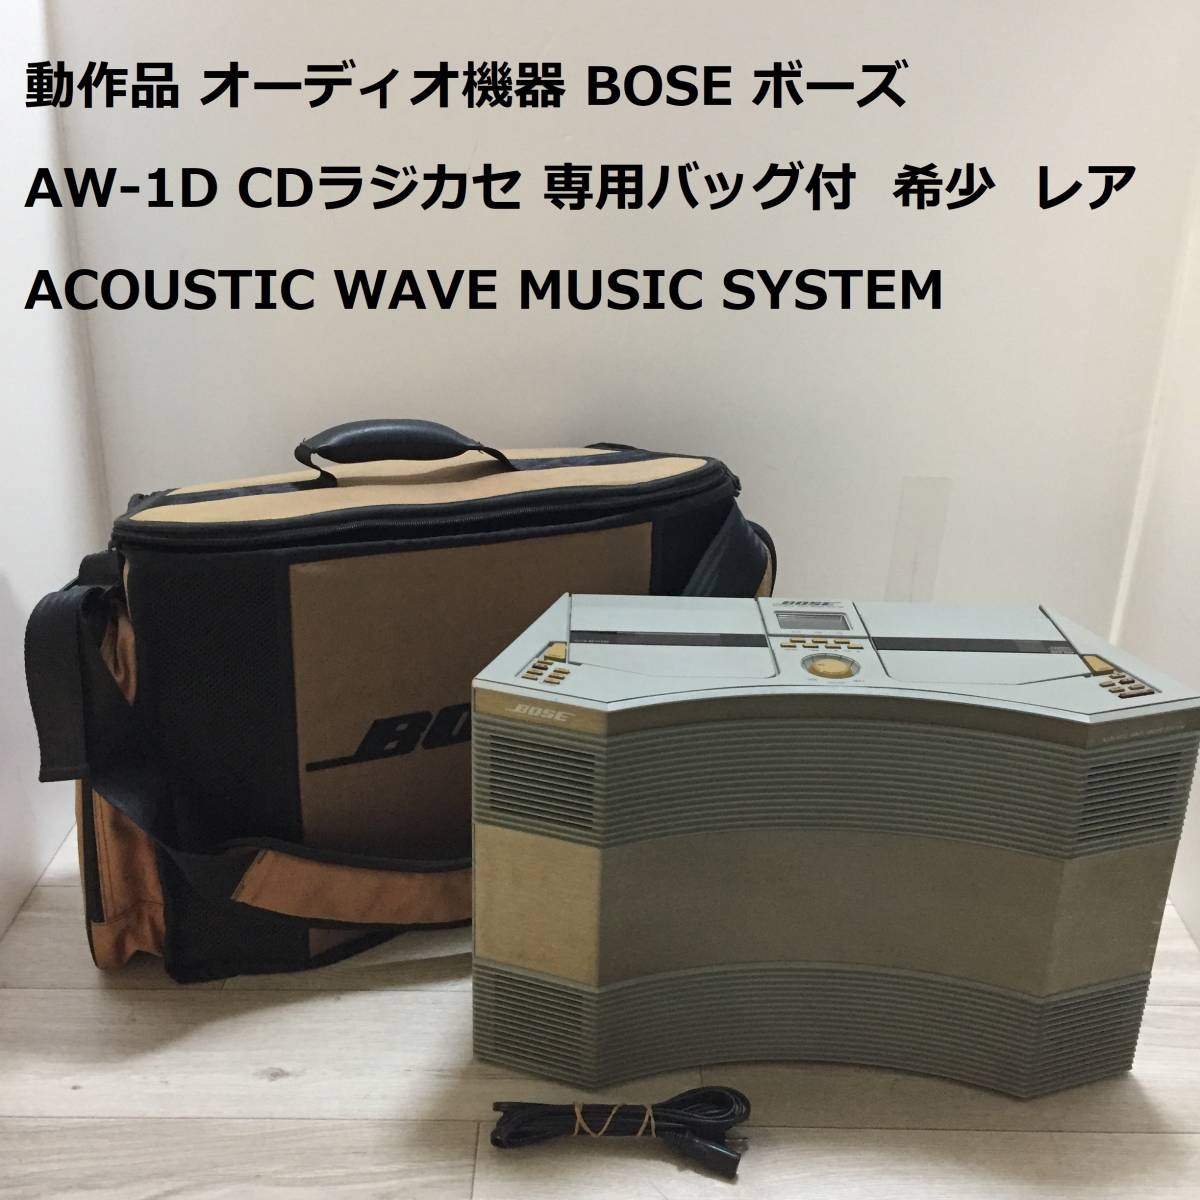 動作品 オーディオ機器 BOSE ボーズ AW-1D CDラジカセ 専用バッグ付 希少 レア ACOUSTIC WAVE MUSIC SYSTEM _画像1